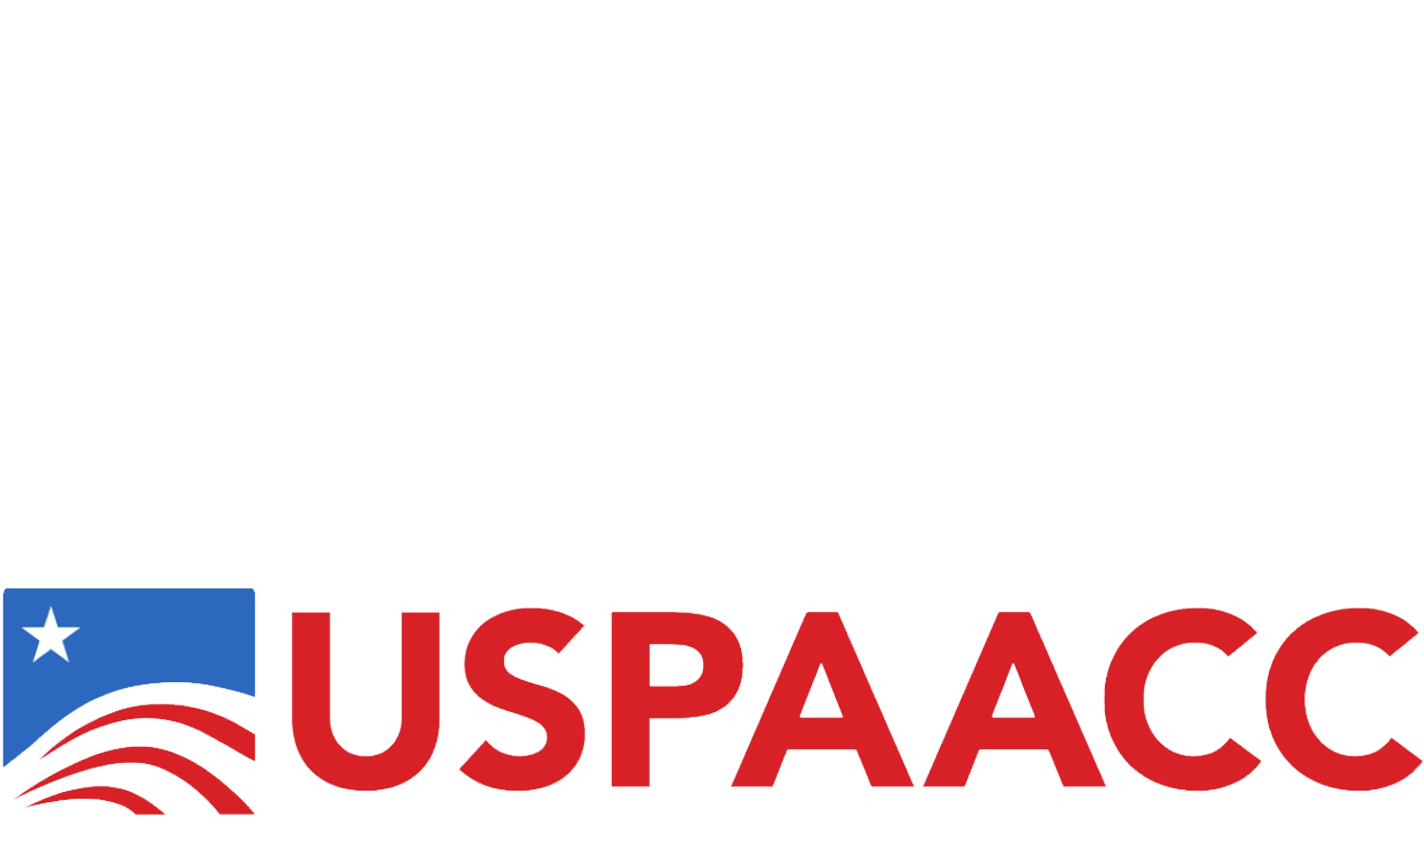 USPAACC-1